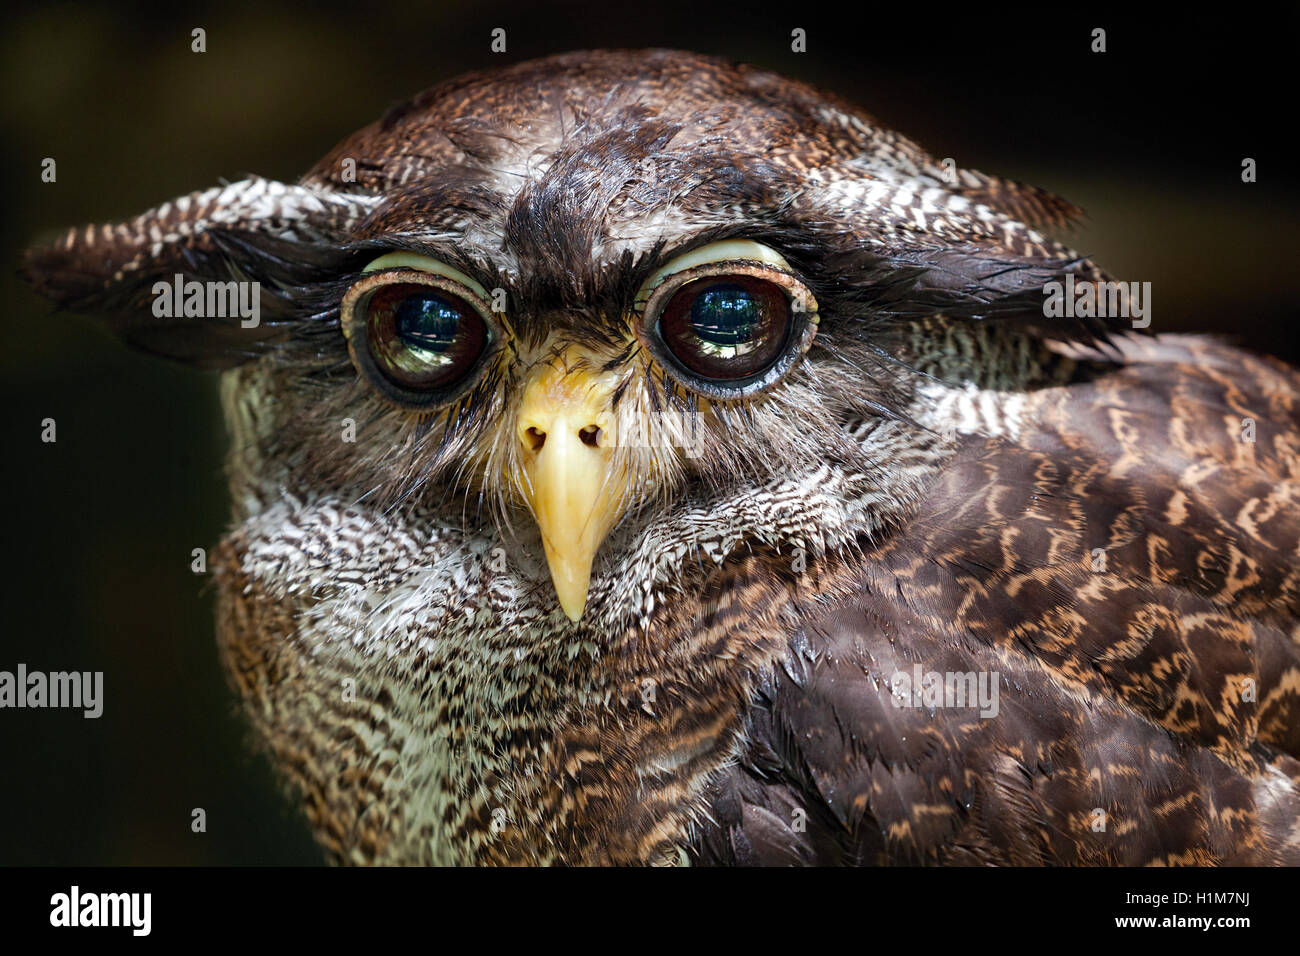 Close-up of a Barred Eagle-owl, Bubo sumatranus, a.k.a. Malay Eagle-owl at the KL Bird Park,  Malaysia. Stock Photo